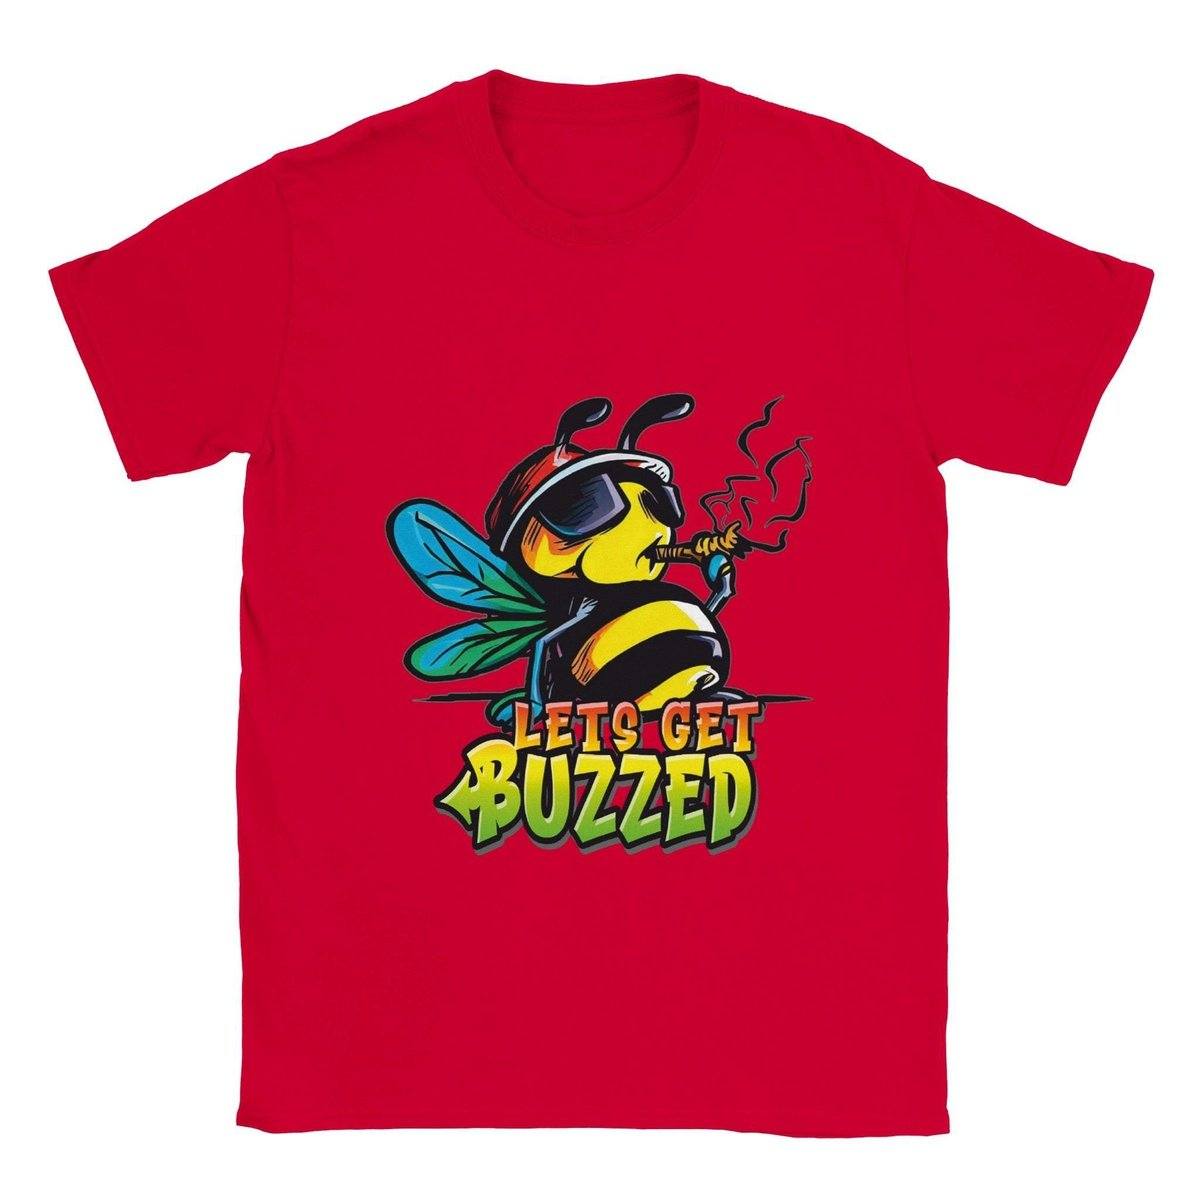 Lets Get Buzzed - Classic Unisex Crewneck T-shirt Australia Online Color Red / S